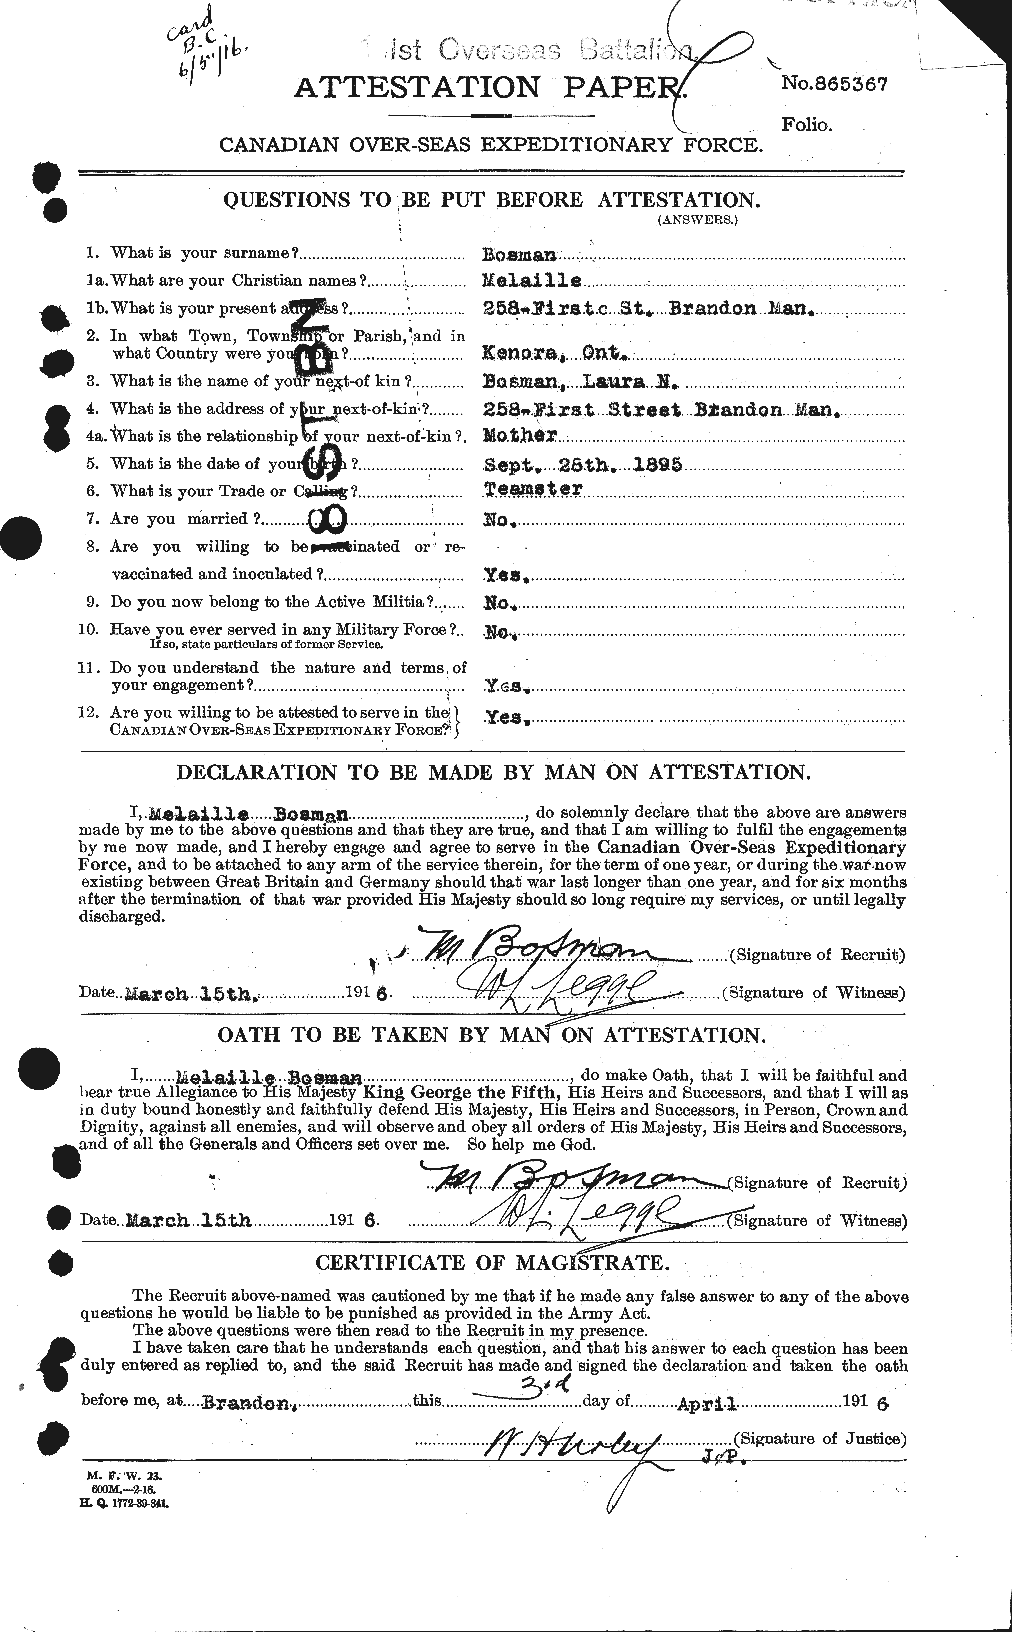 Dossiers du Personnel de la Première Guerre mondiale - CEC 251796a